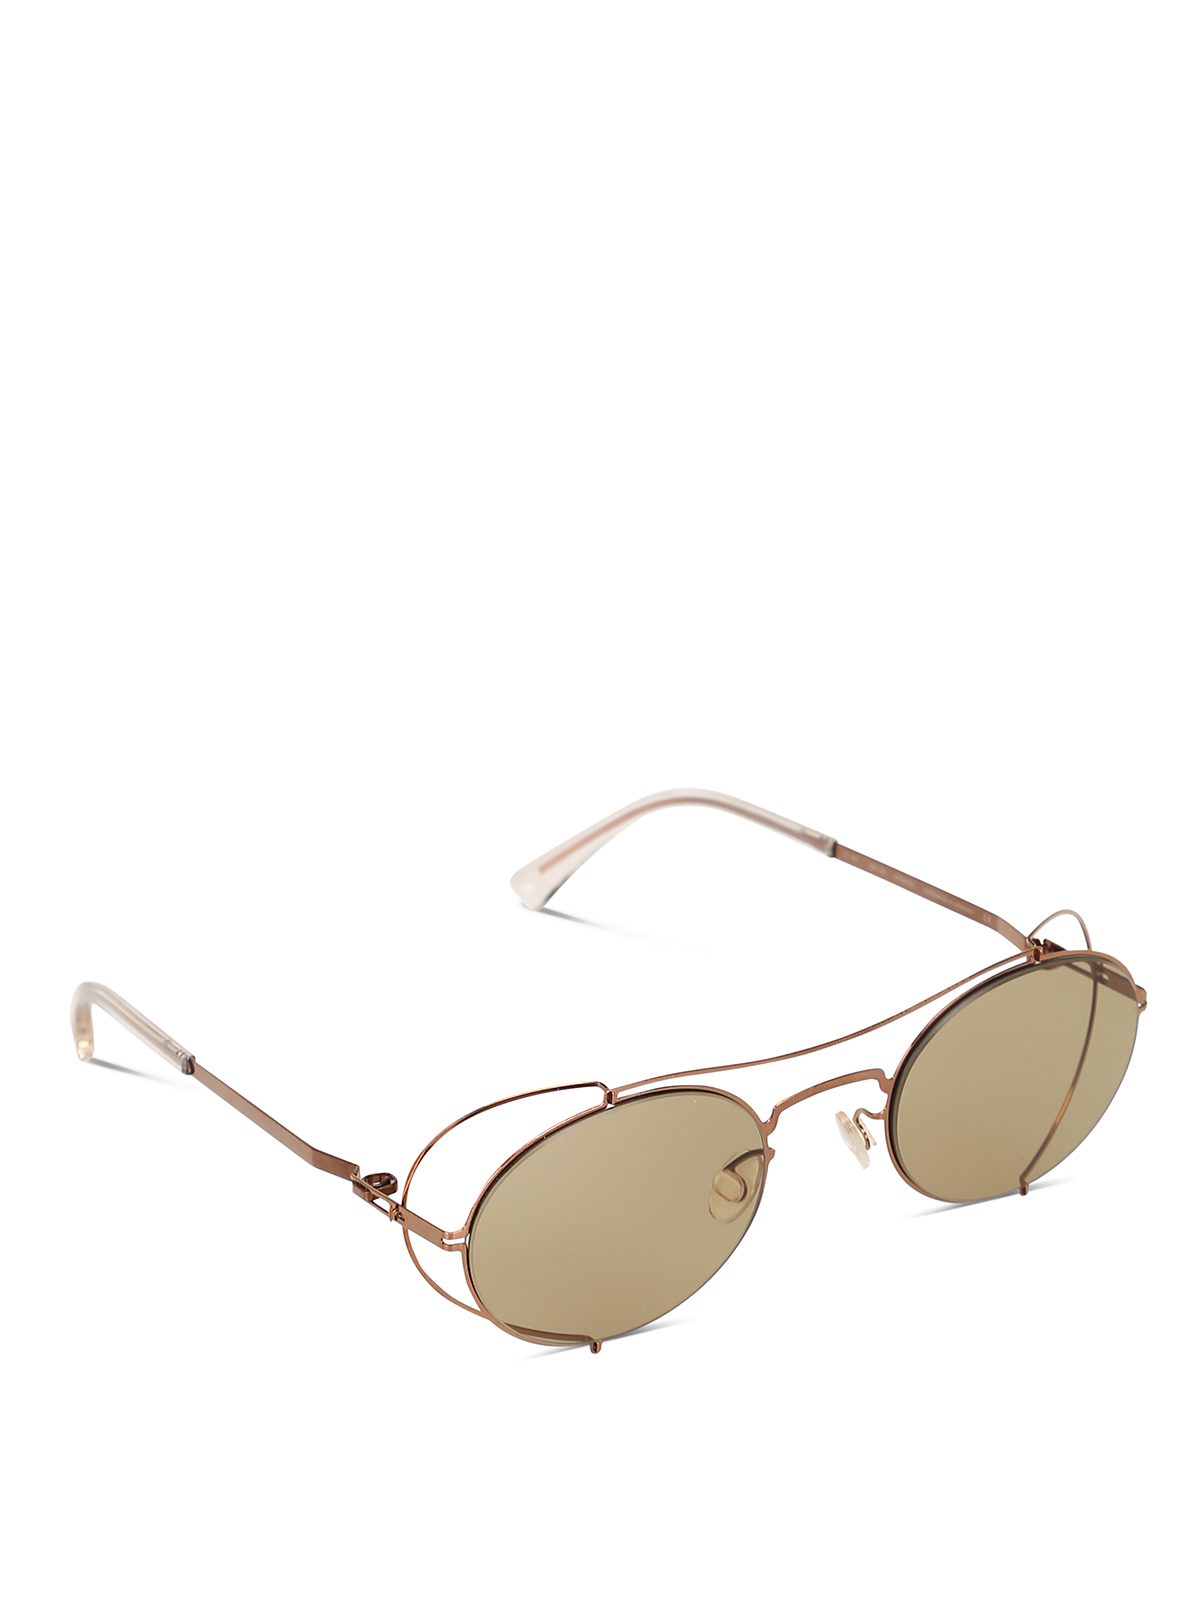 Sunglasses Mykita - Mykita x Maison Margiela oval sunglasses MMCRAFT002252